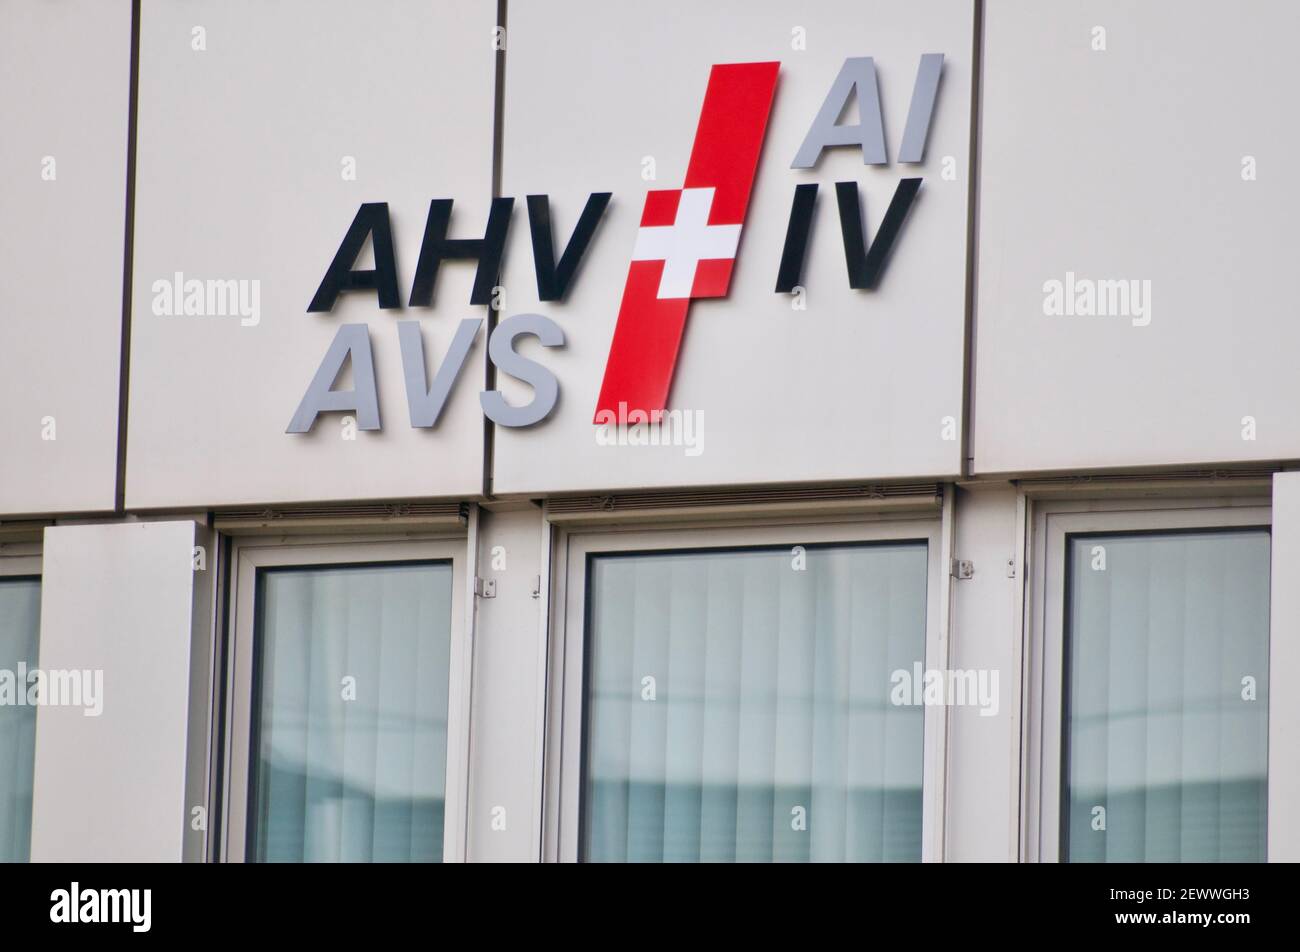 Zug, Suisse - 26 février 2021 : AHV AVS IV ai logo suisse d'assurance sociale de retraite et d'invalidité accroché à l'immeuble de bureaux de Zug, en Suisse Banque D'Images